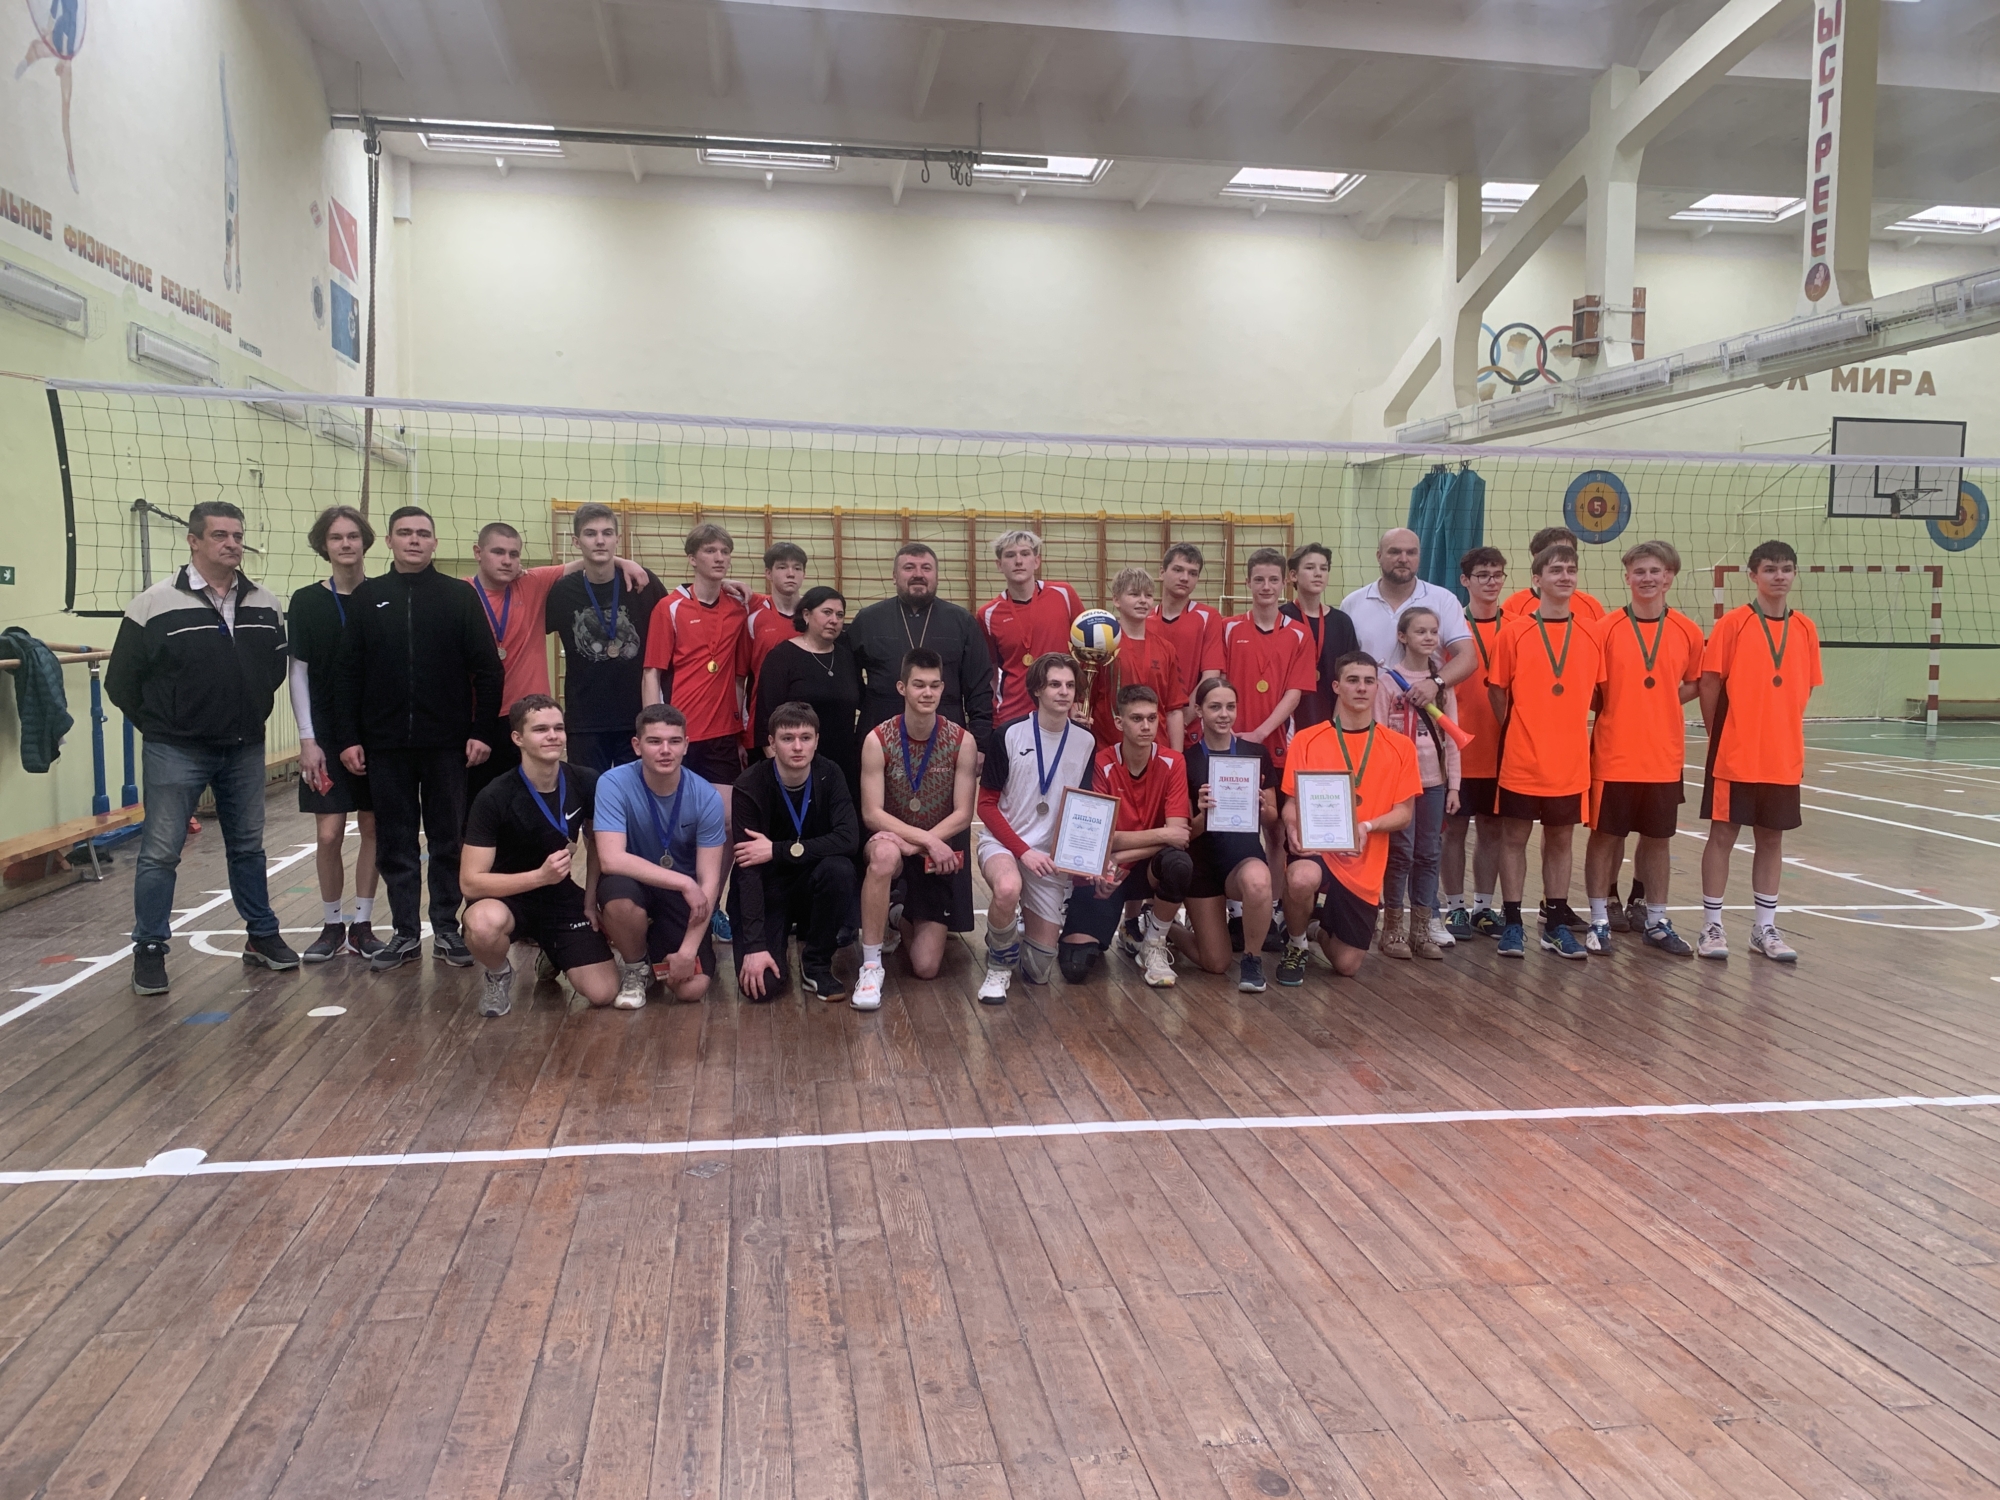 Ритм игры: турнир по волейболу состоялся в Светлогорском благочинии